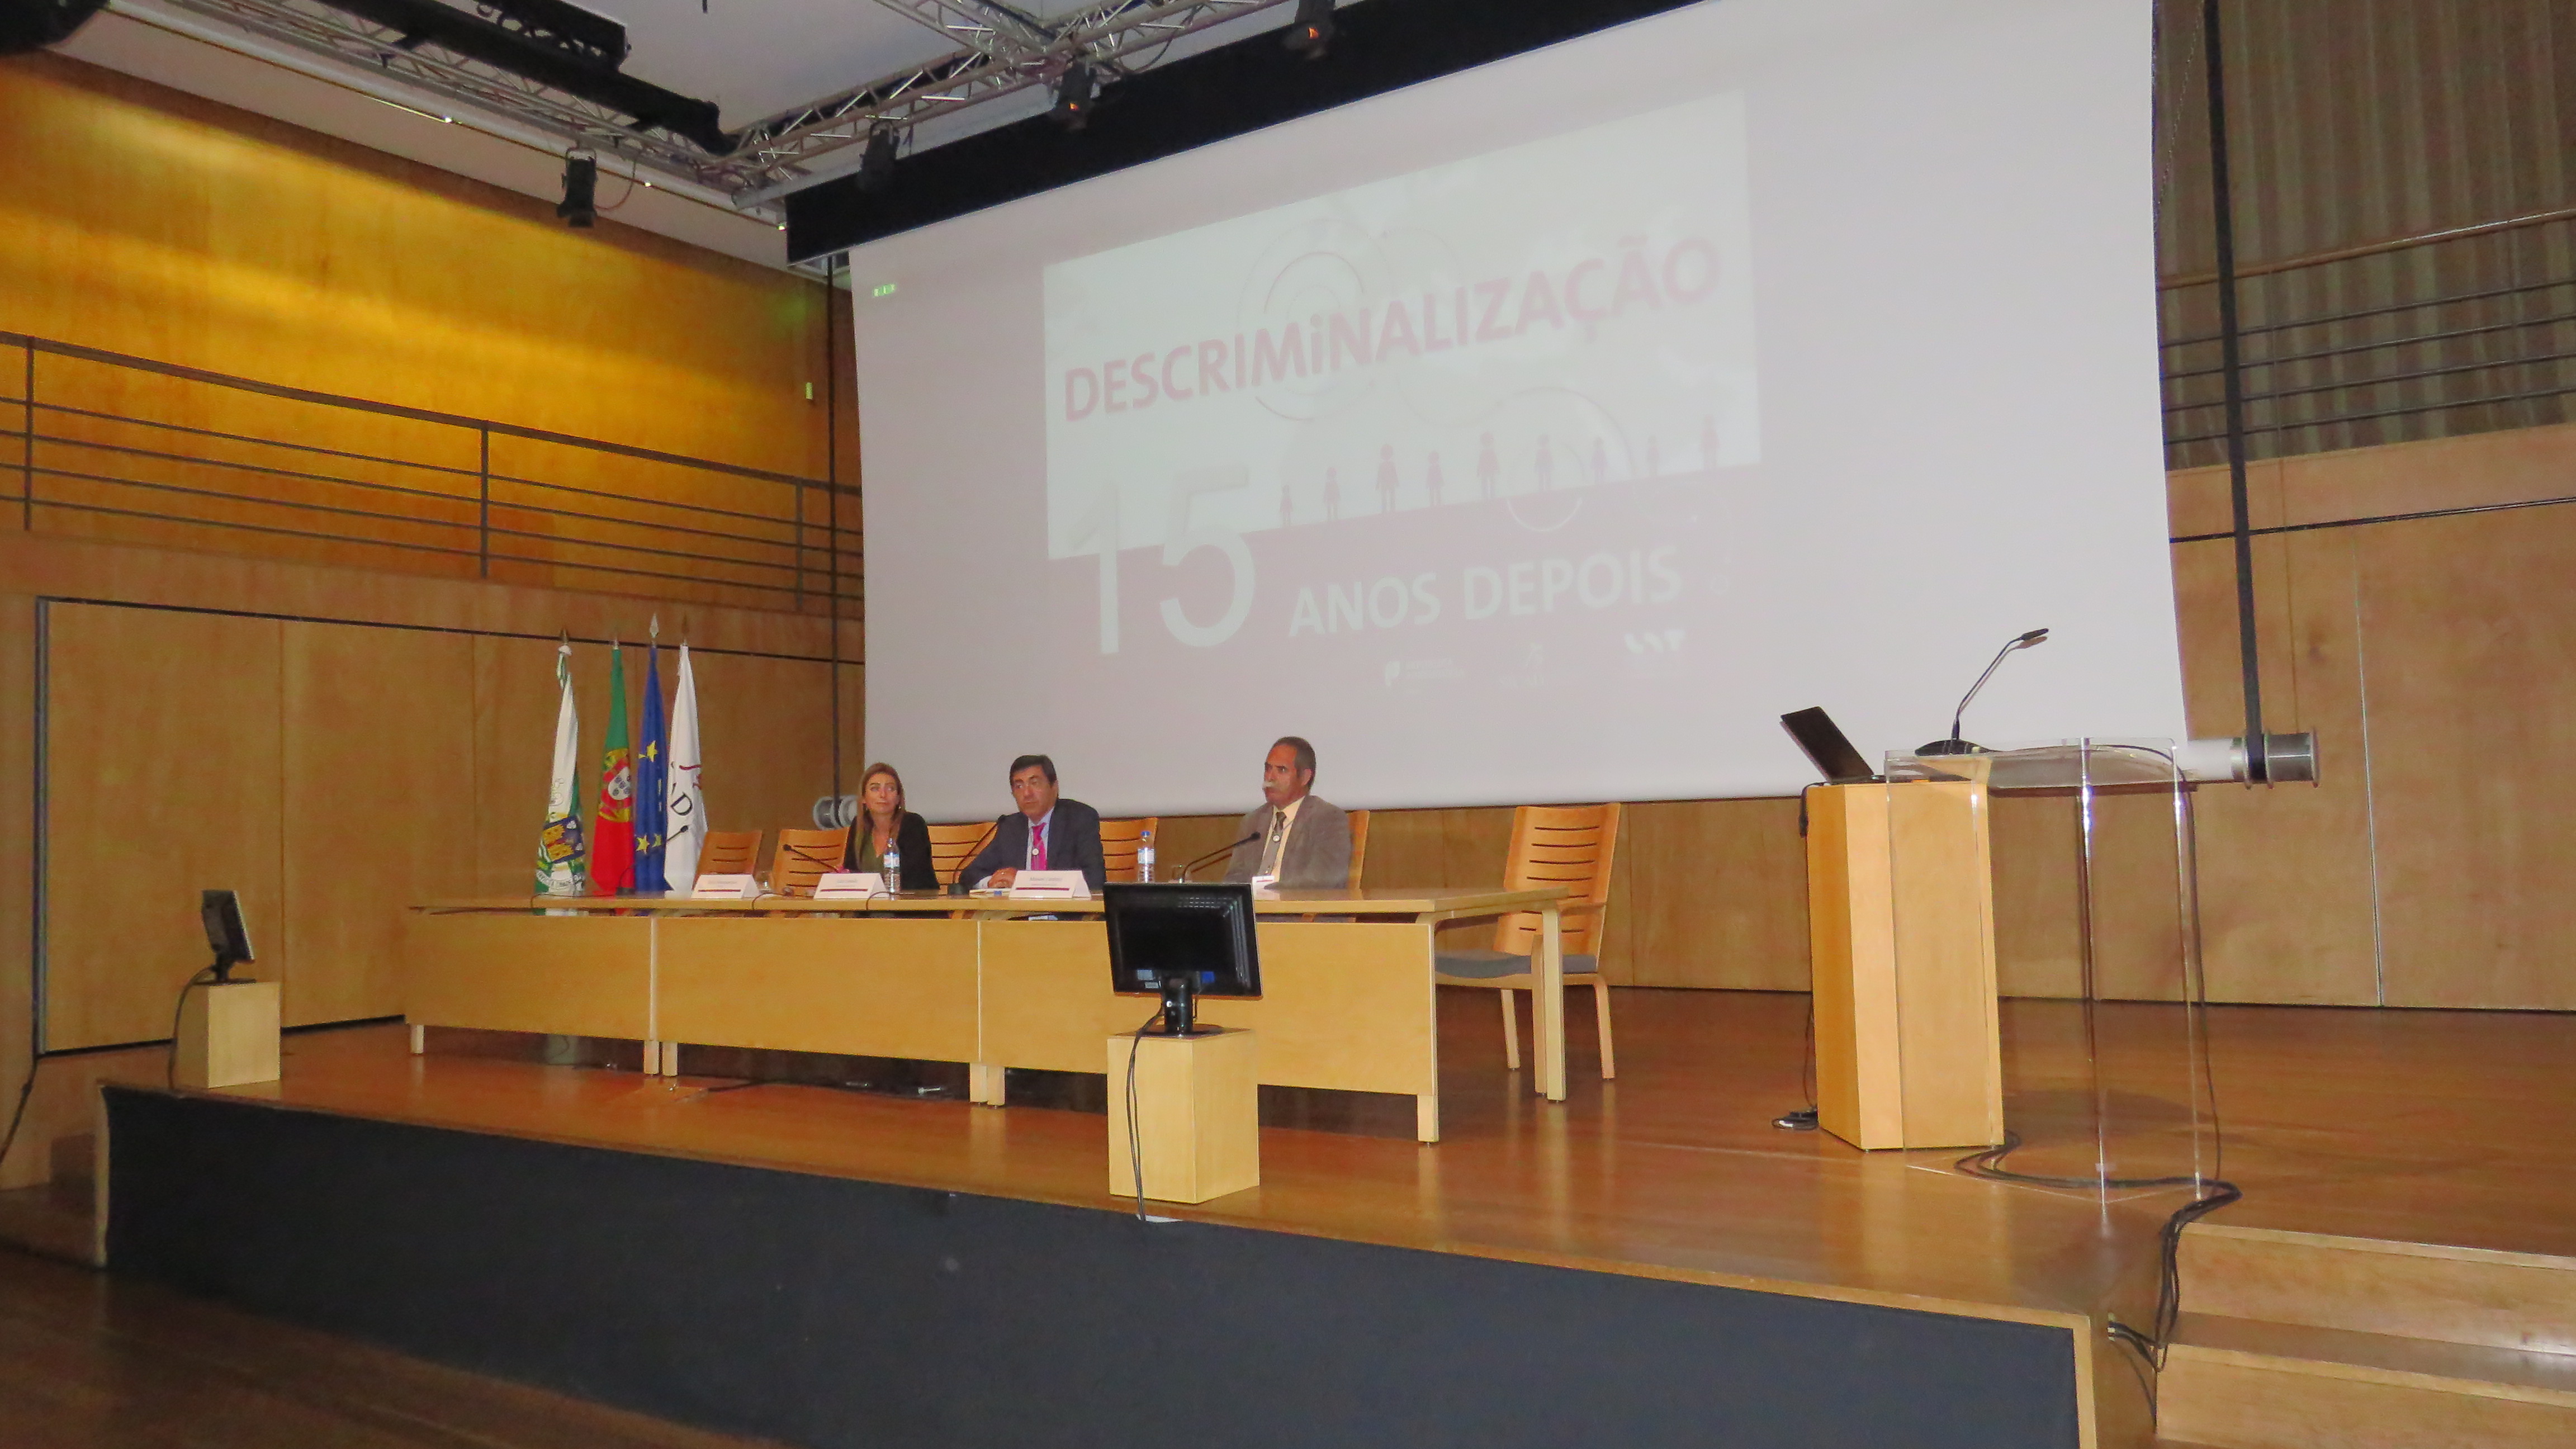 Foto 3 de congresso sobre descriminalização do consumo de drogas